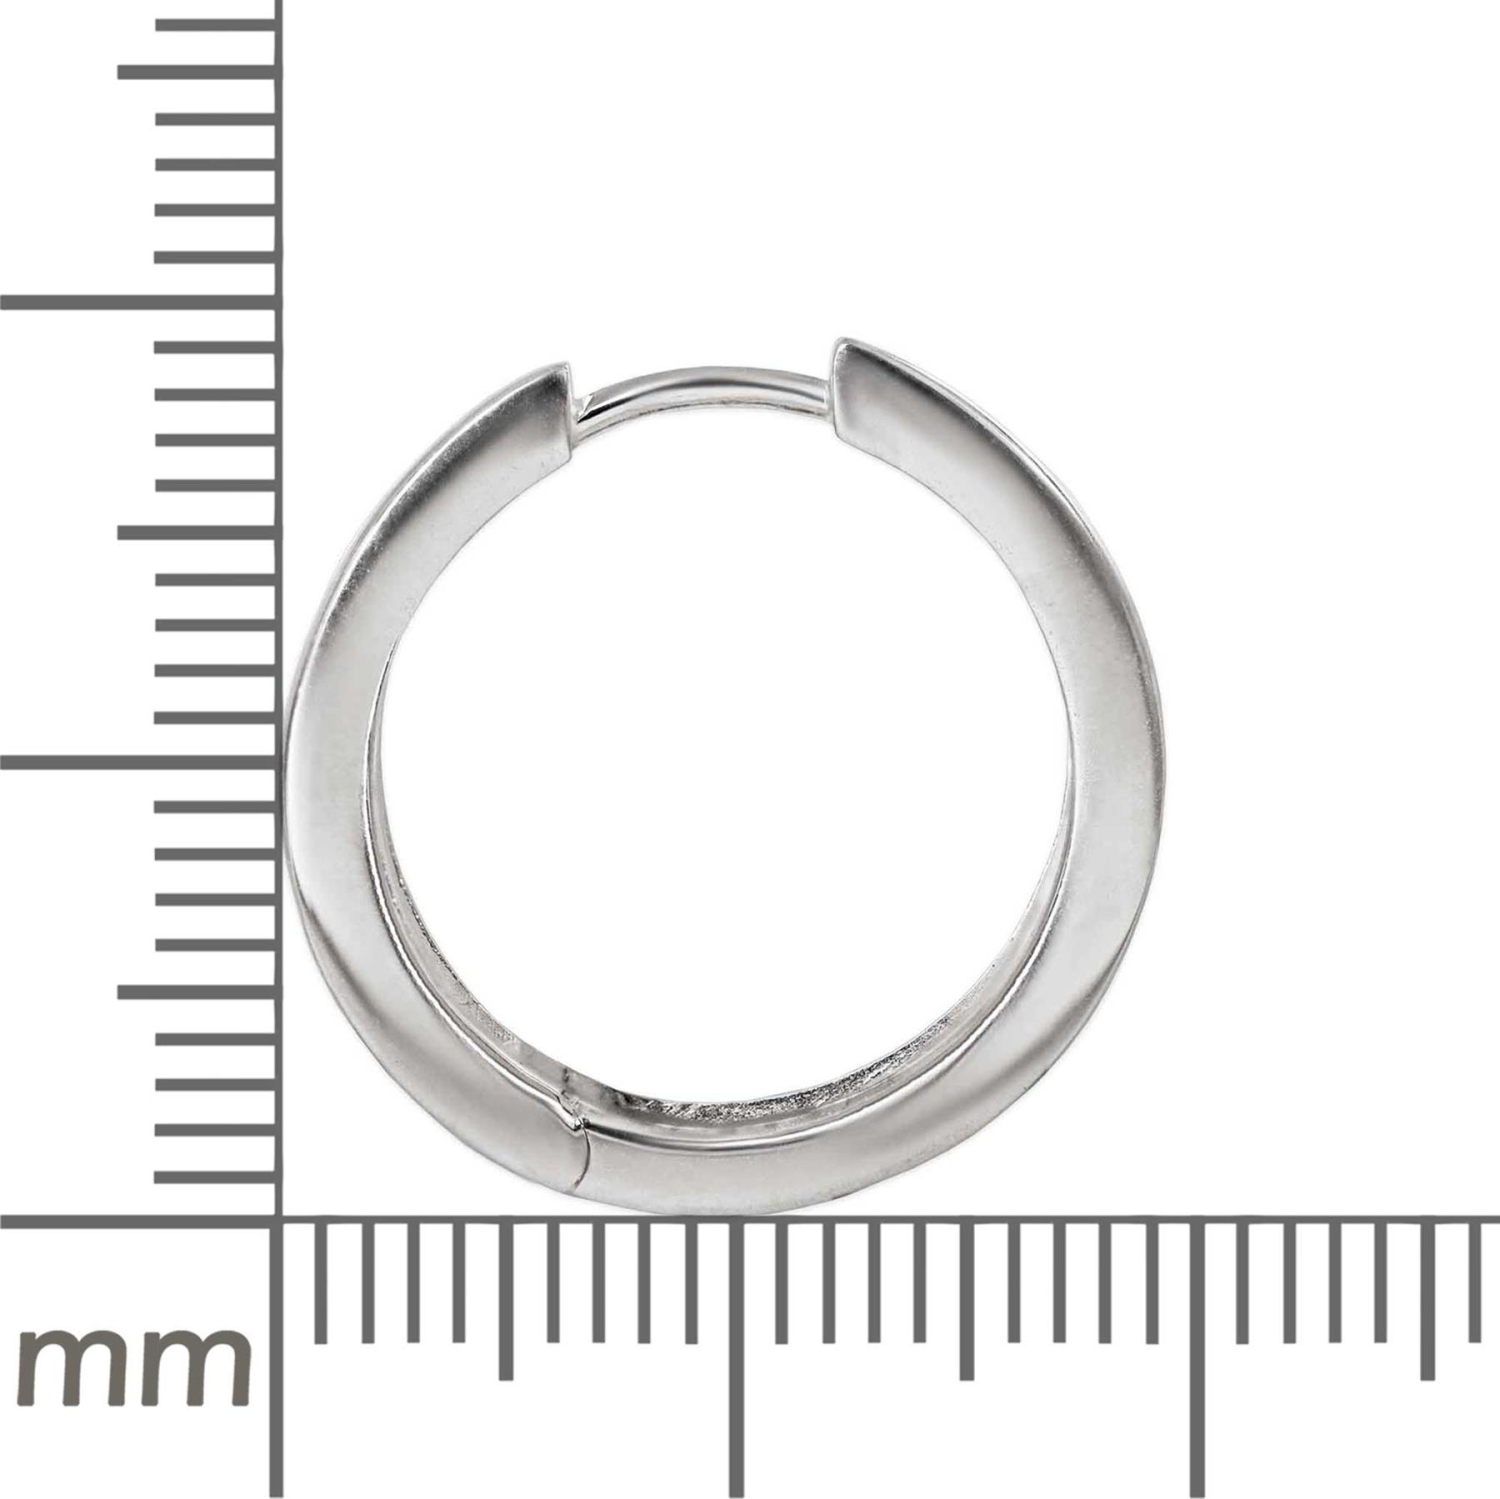 Silberne Creolen 19 mm Ø mm 3,5 mm breit poliert 925 Sterling Silber